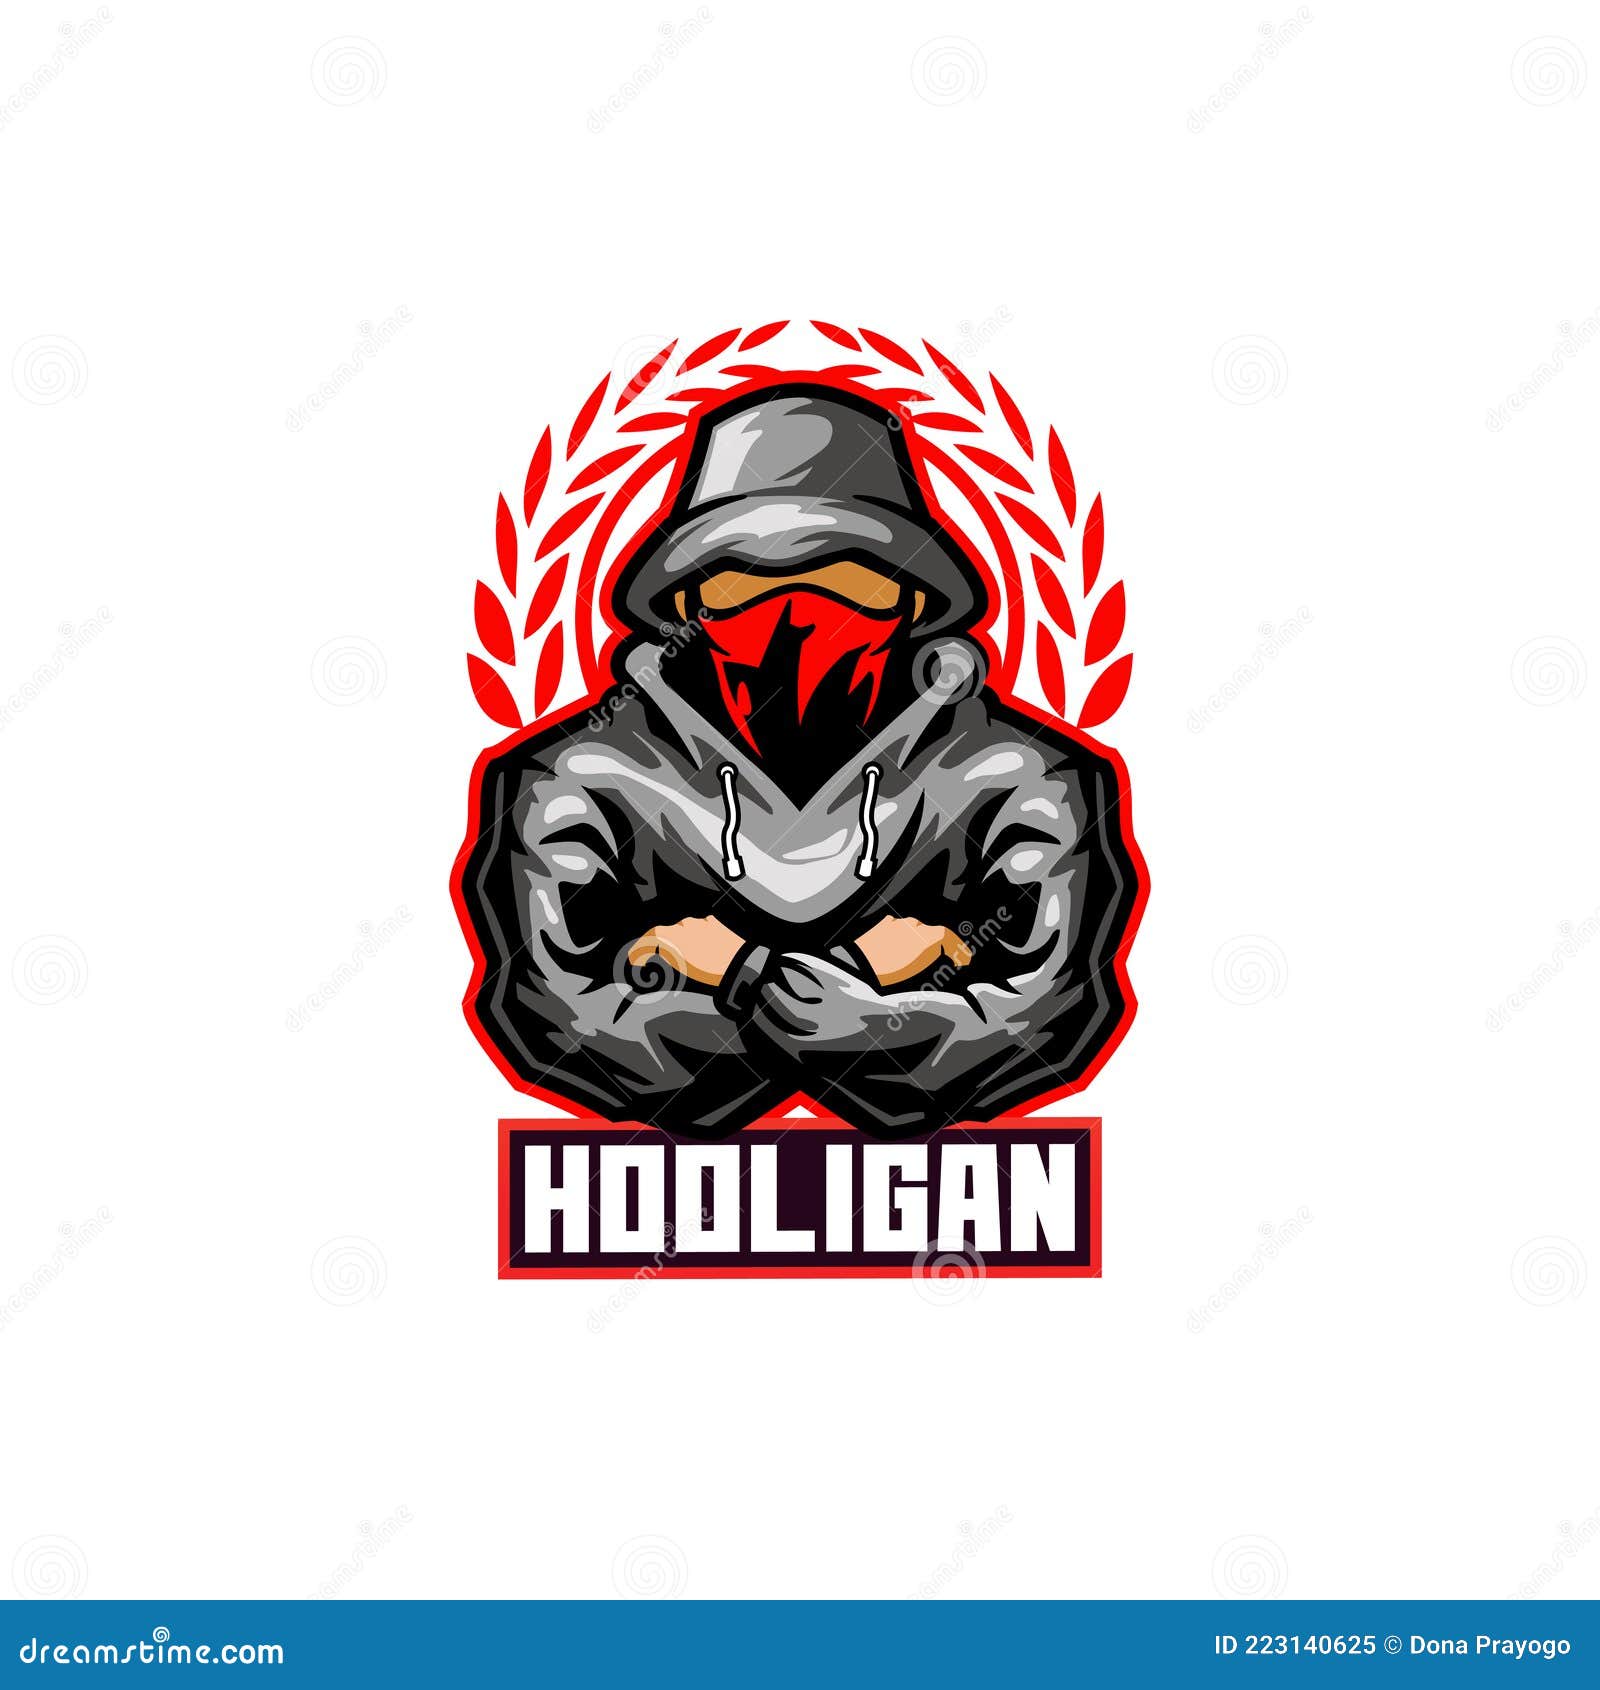 Design do logotipo do mascote holigan